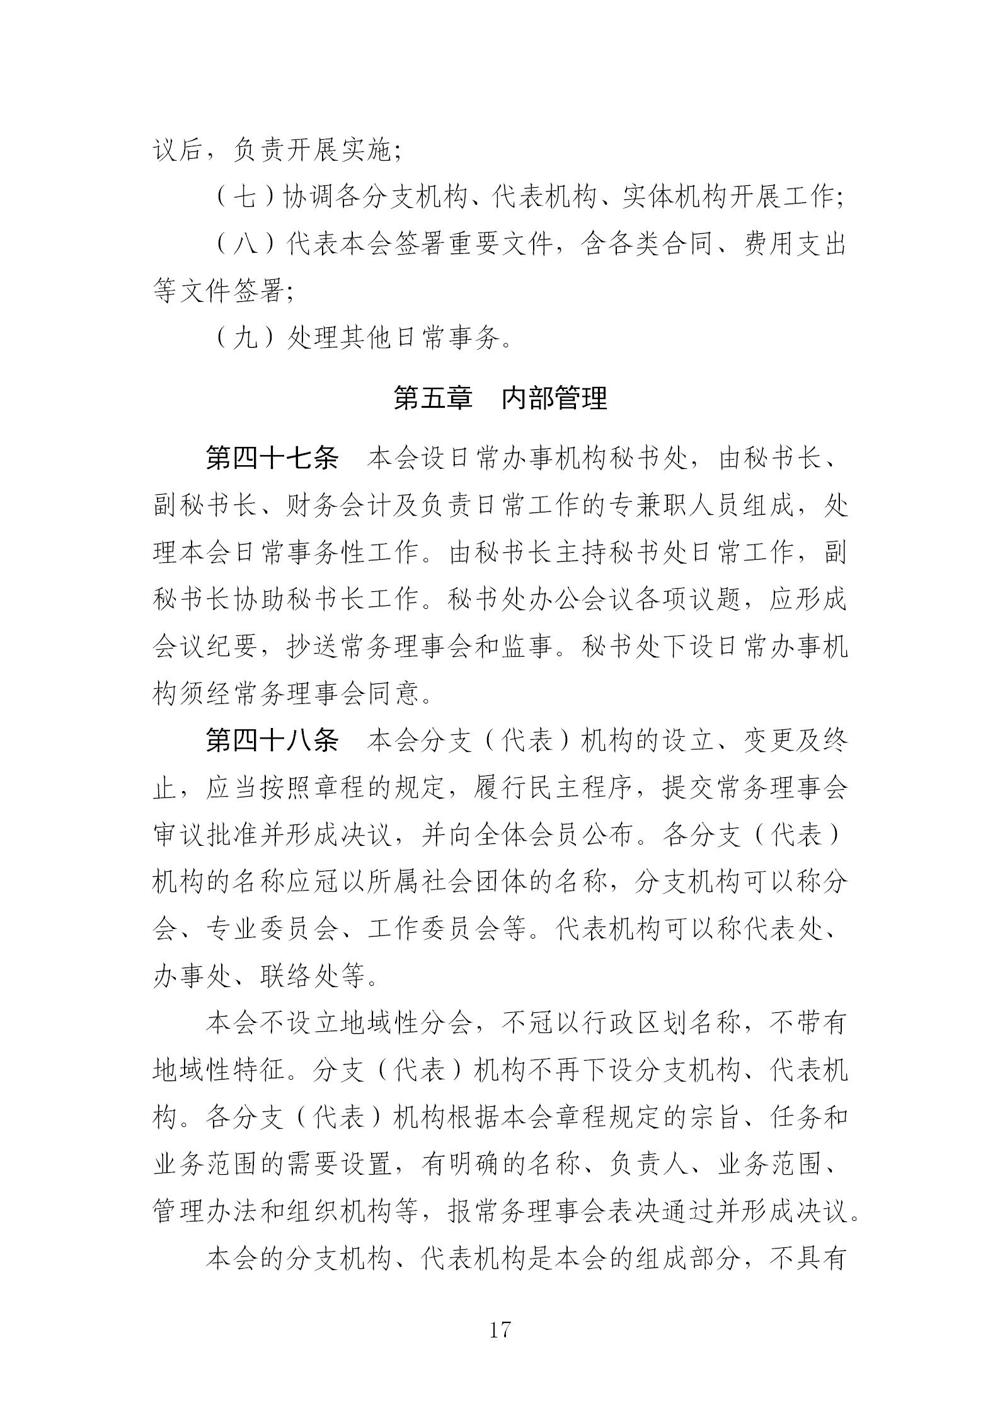 3-广东省羽毛球协会新章程20221107-根据民政厅修改意见修改_17